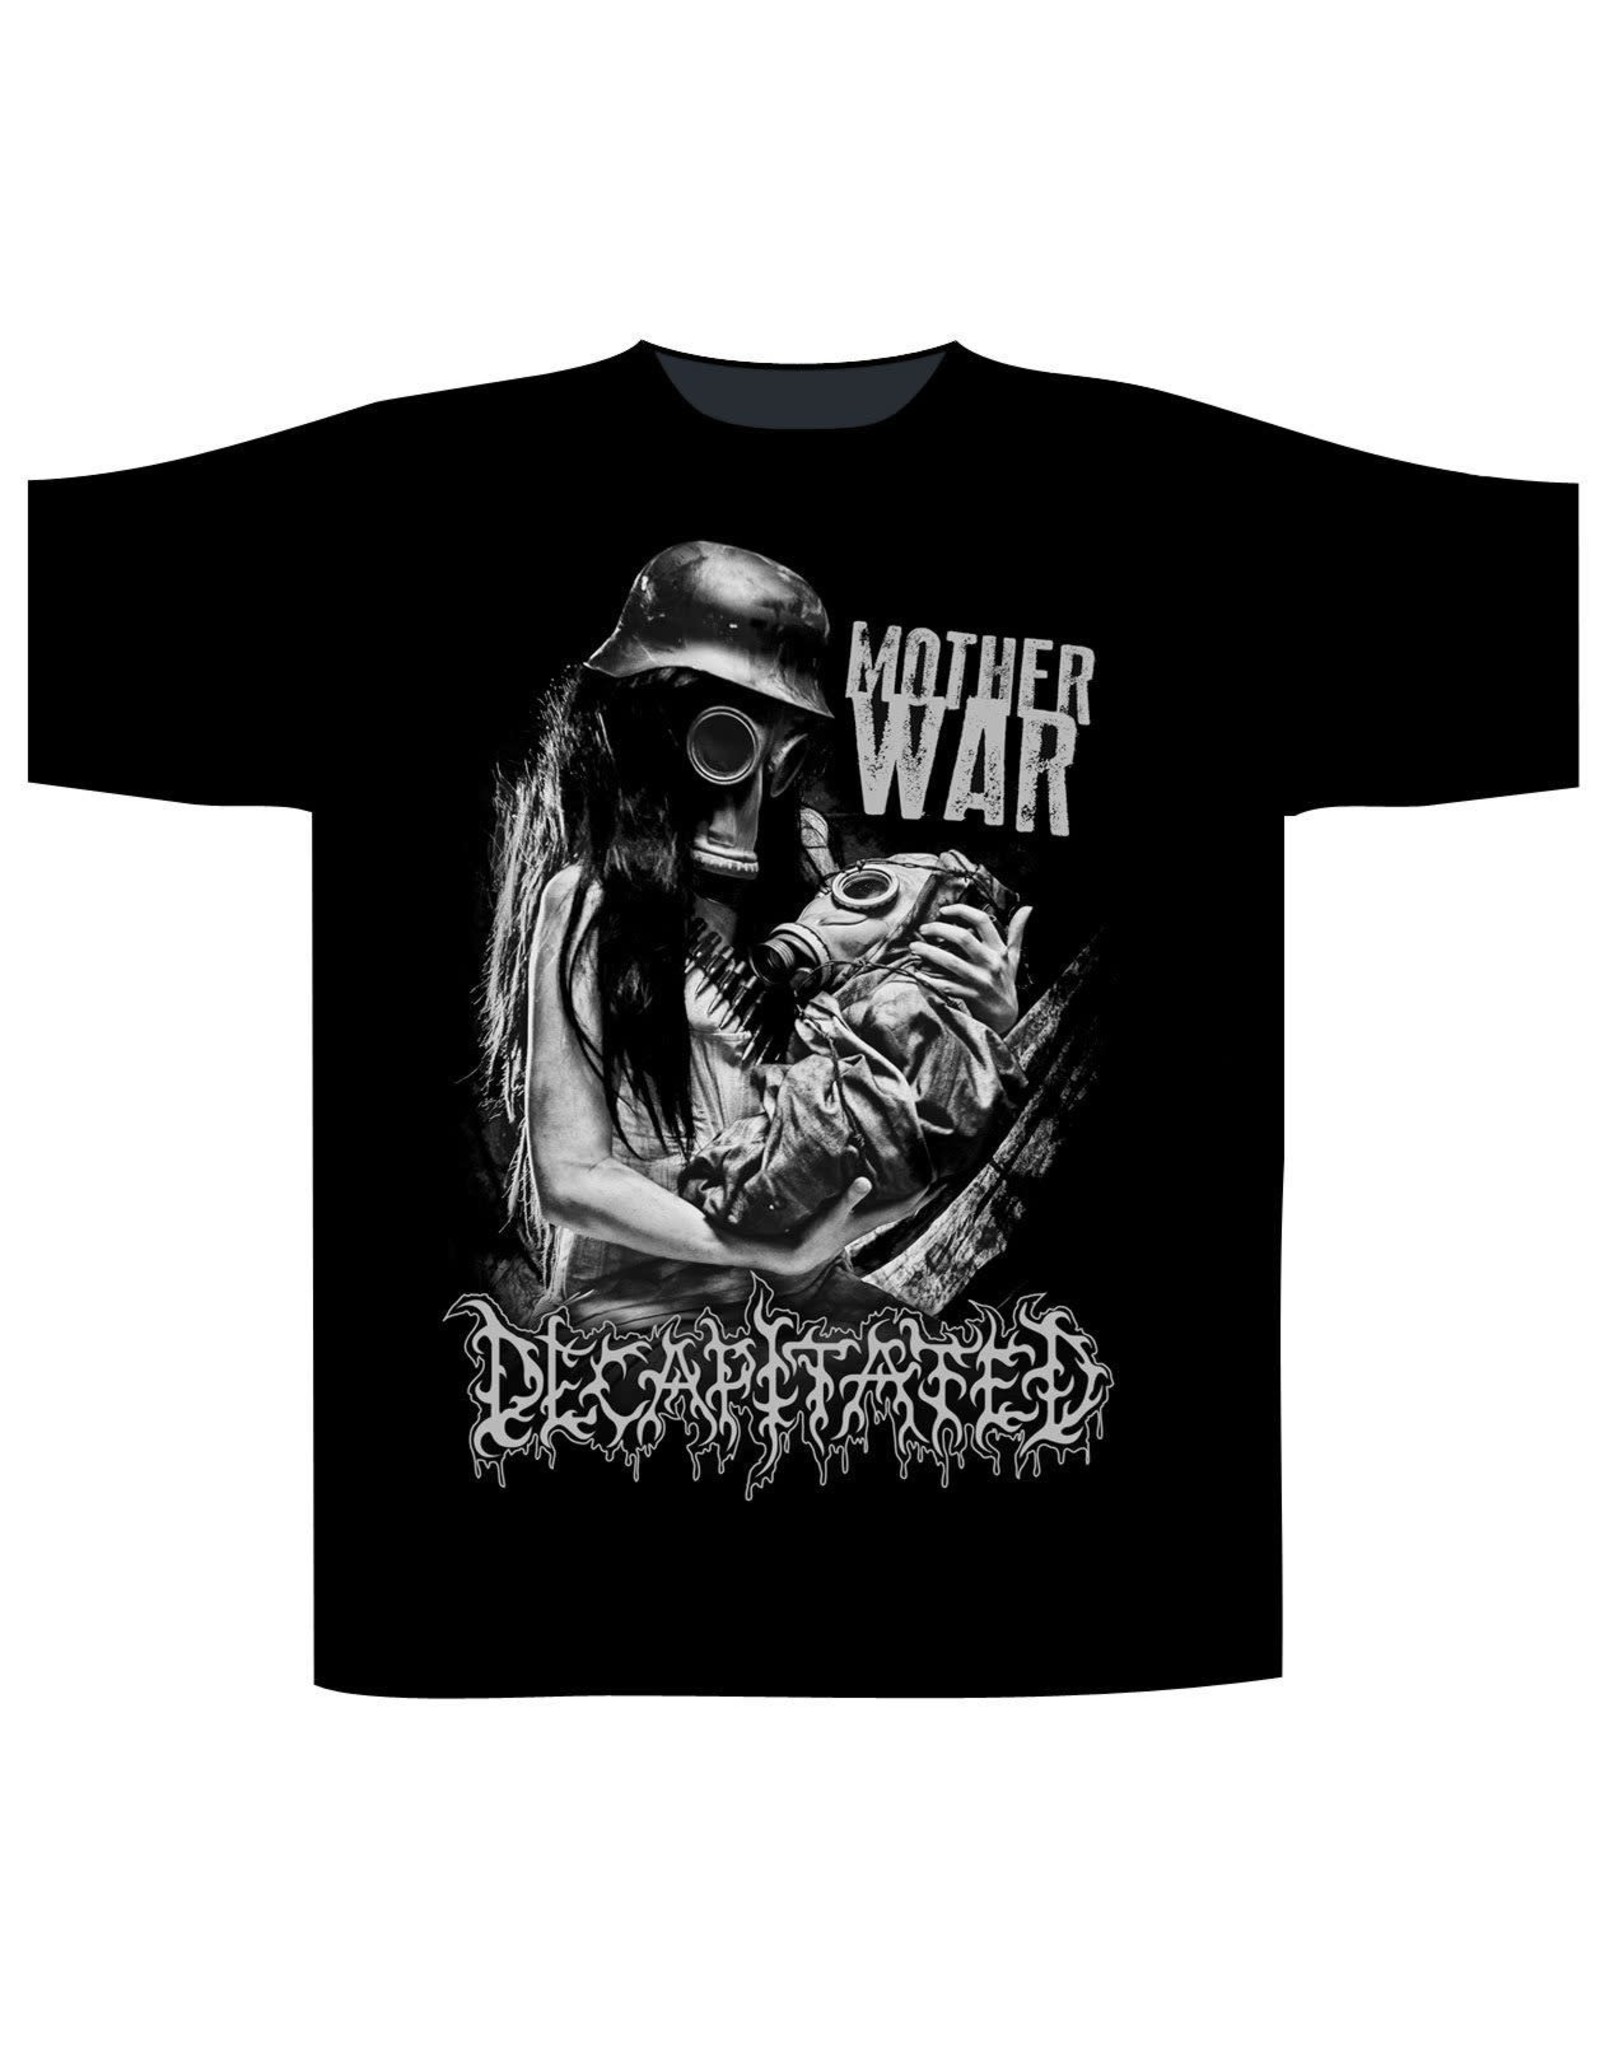 Decapitated "Mother War" T-Shirt